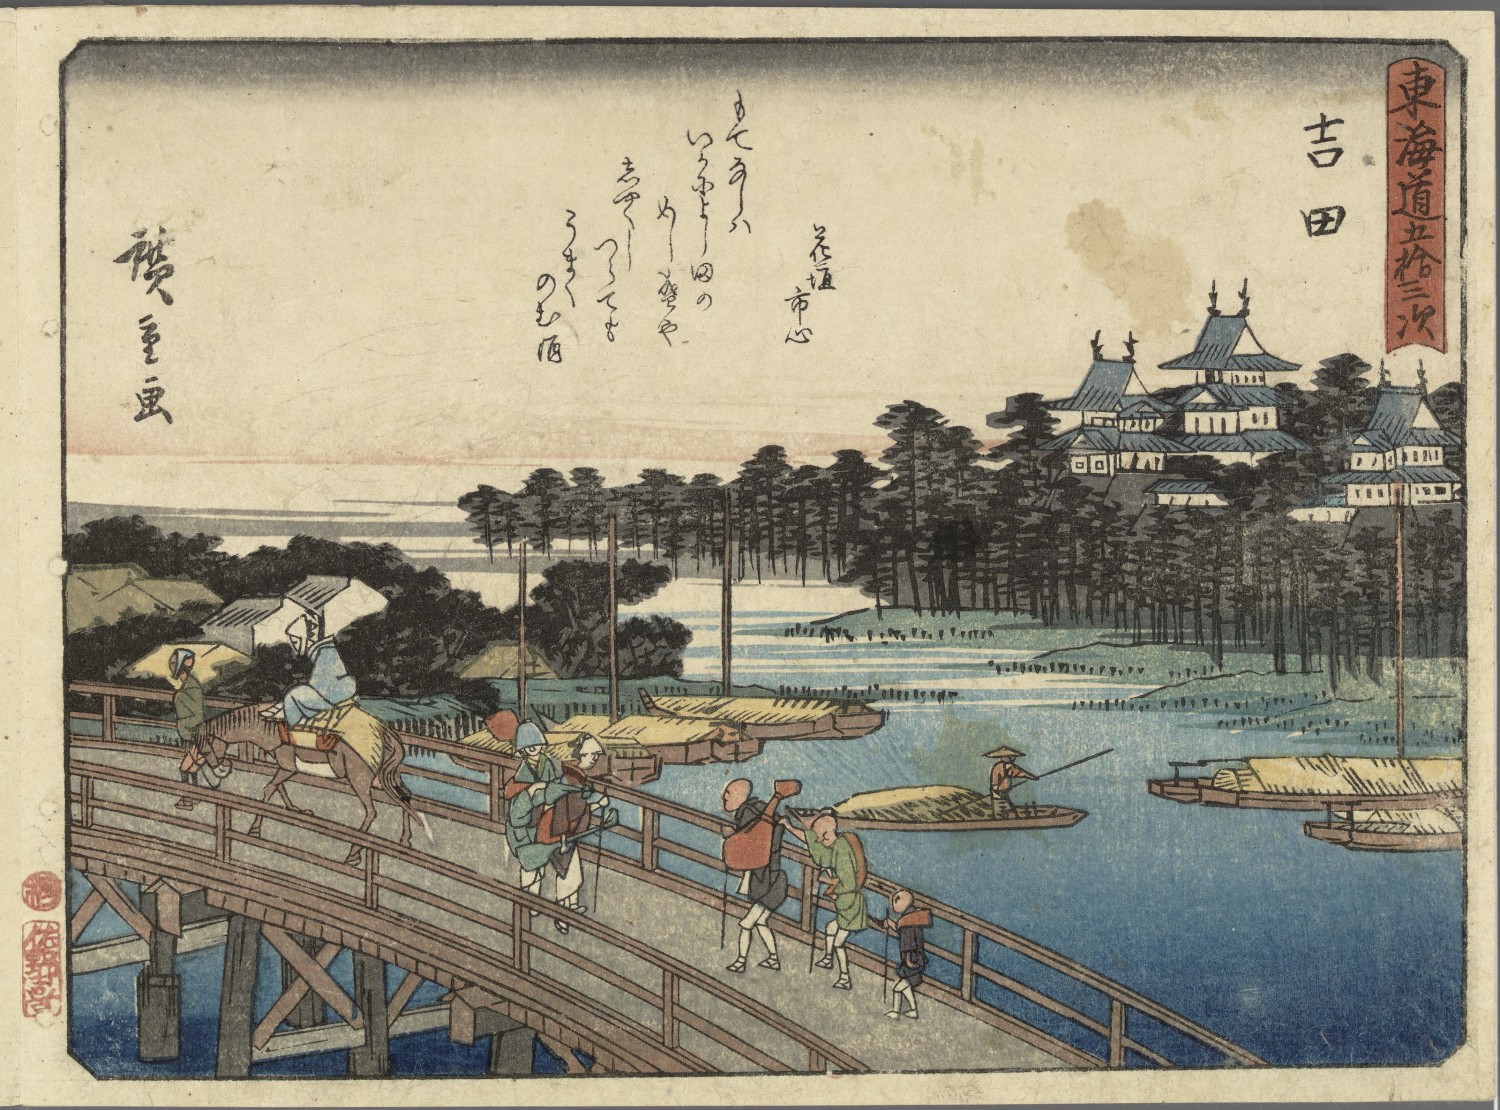 Ando Hiroshige, Yoshida from Kyoka Tokaido